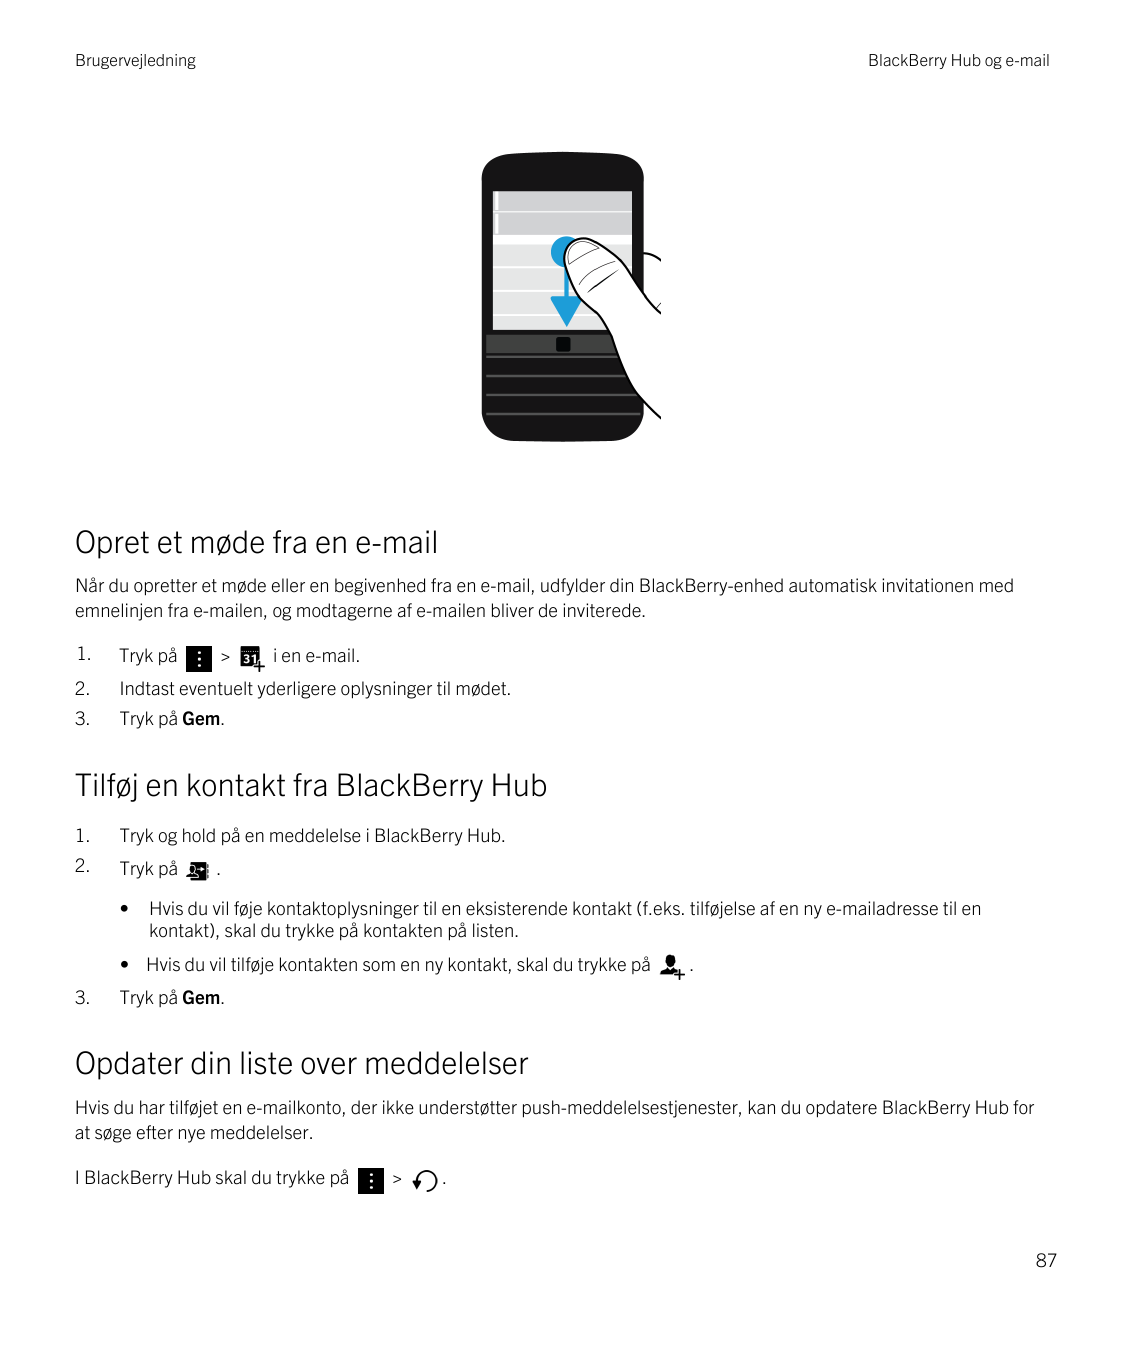 BrugervejledningBlackBerry Hub og e-mailOpret et møde fra en e-mailNår du opretter et møde eller en begivenhed fra en e-mail, ud